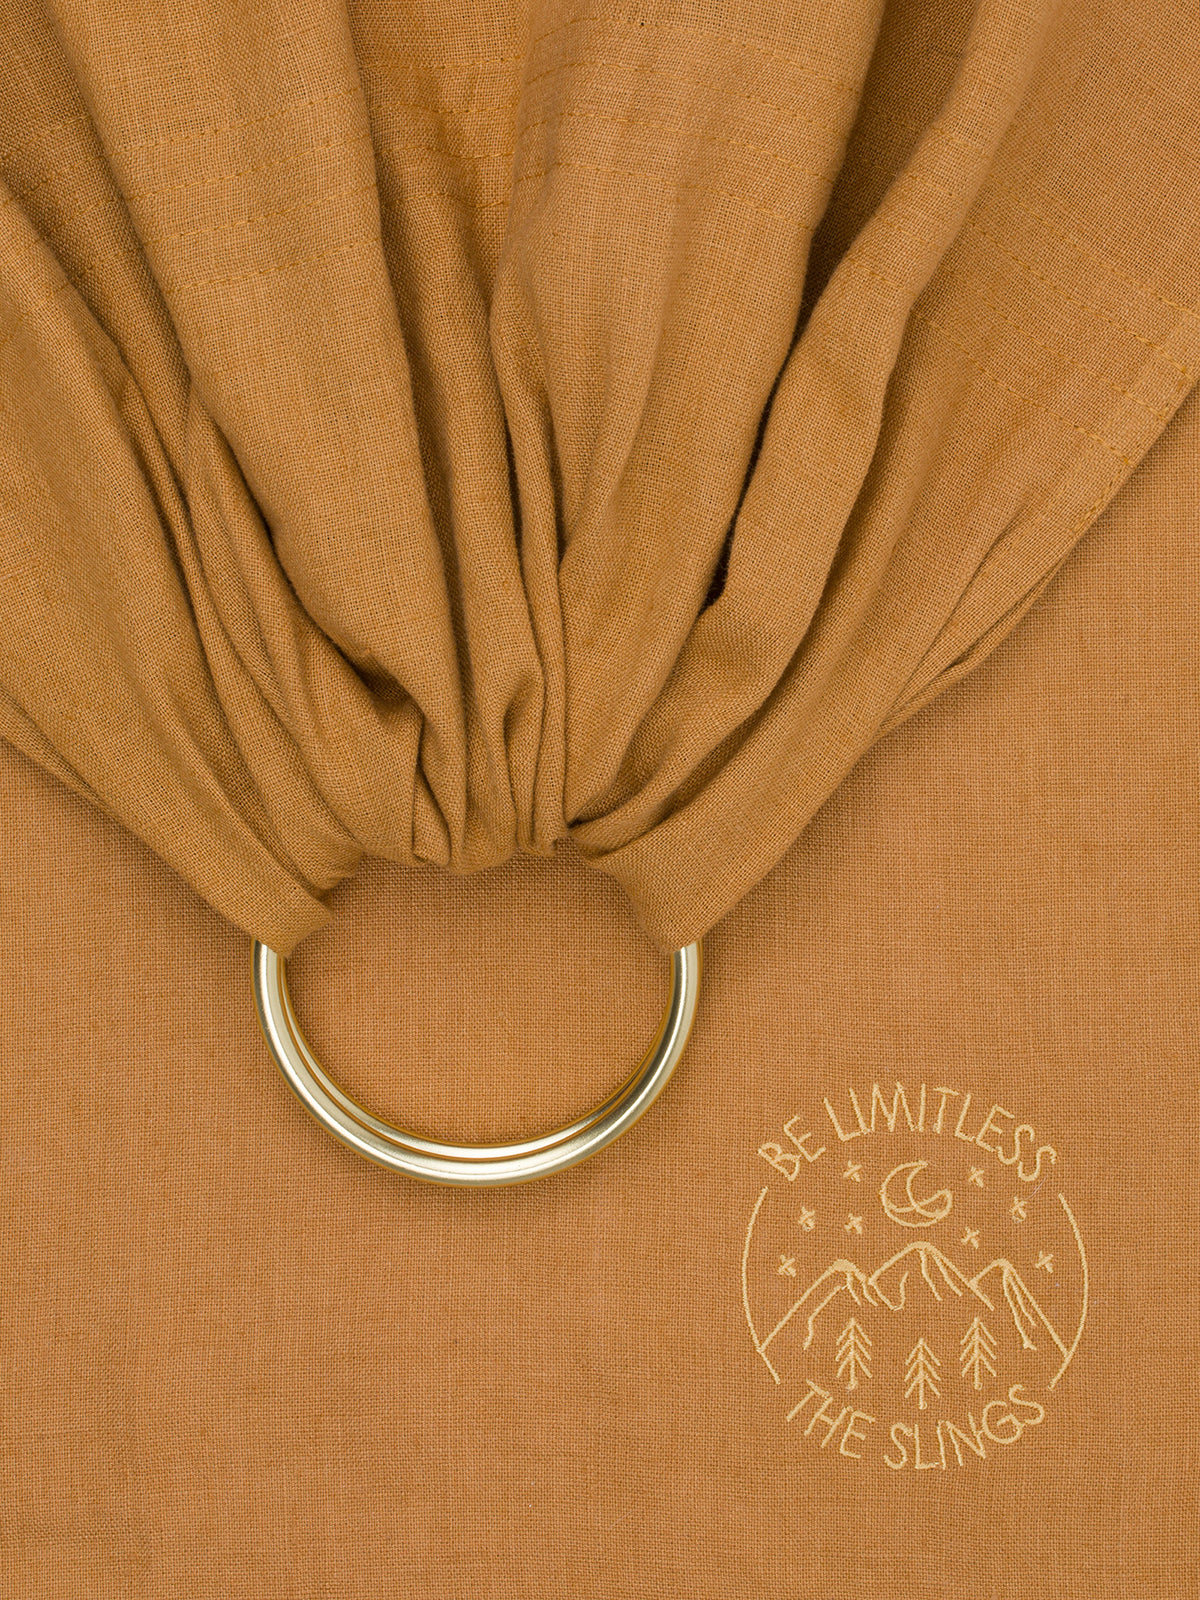 Linen ring sling